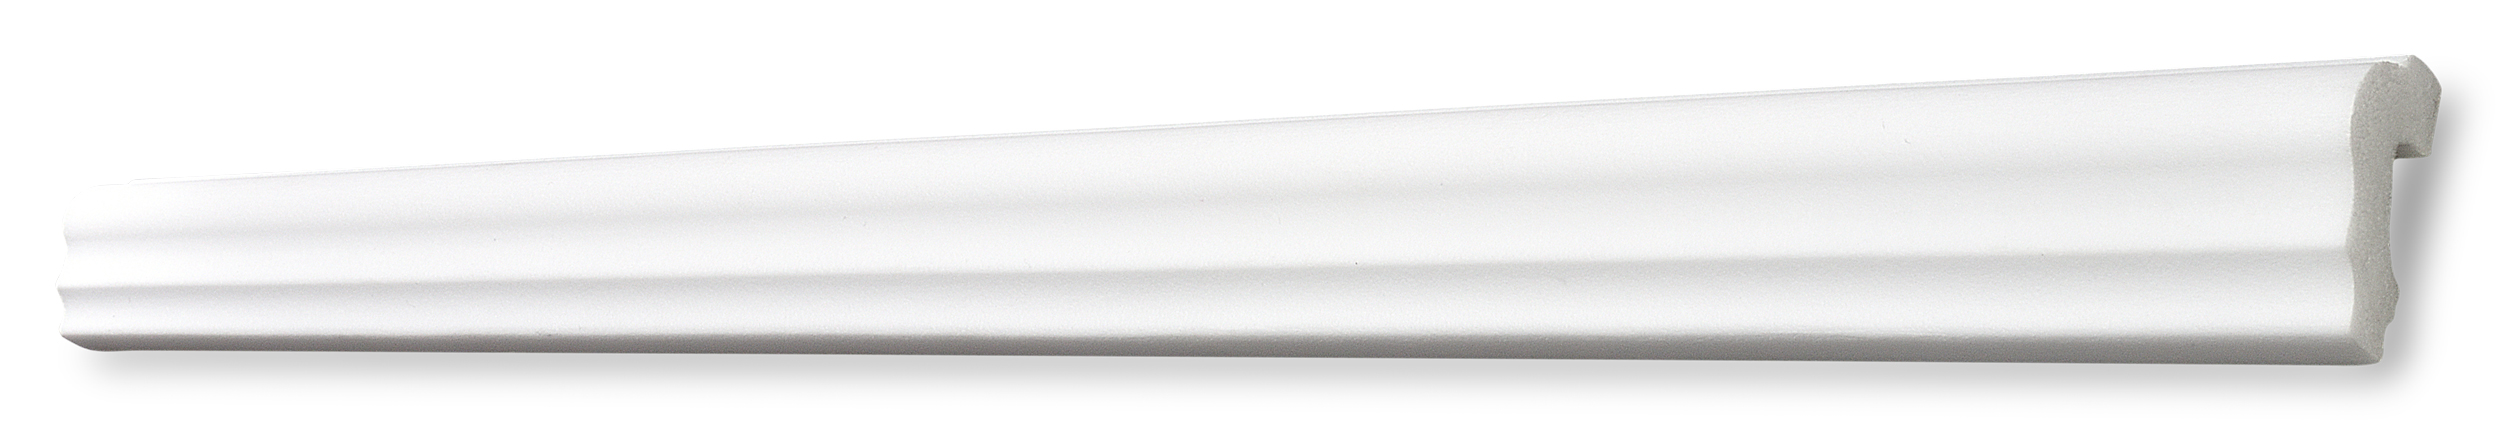 Decosa Flachprofil F40, weiß, 40 mm, Länge: 2 m